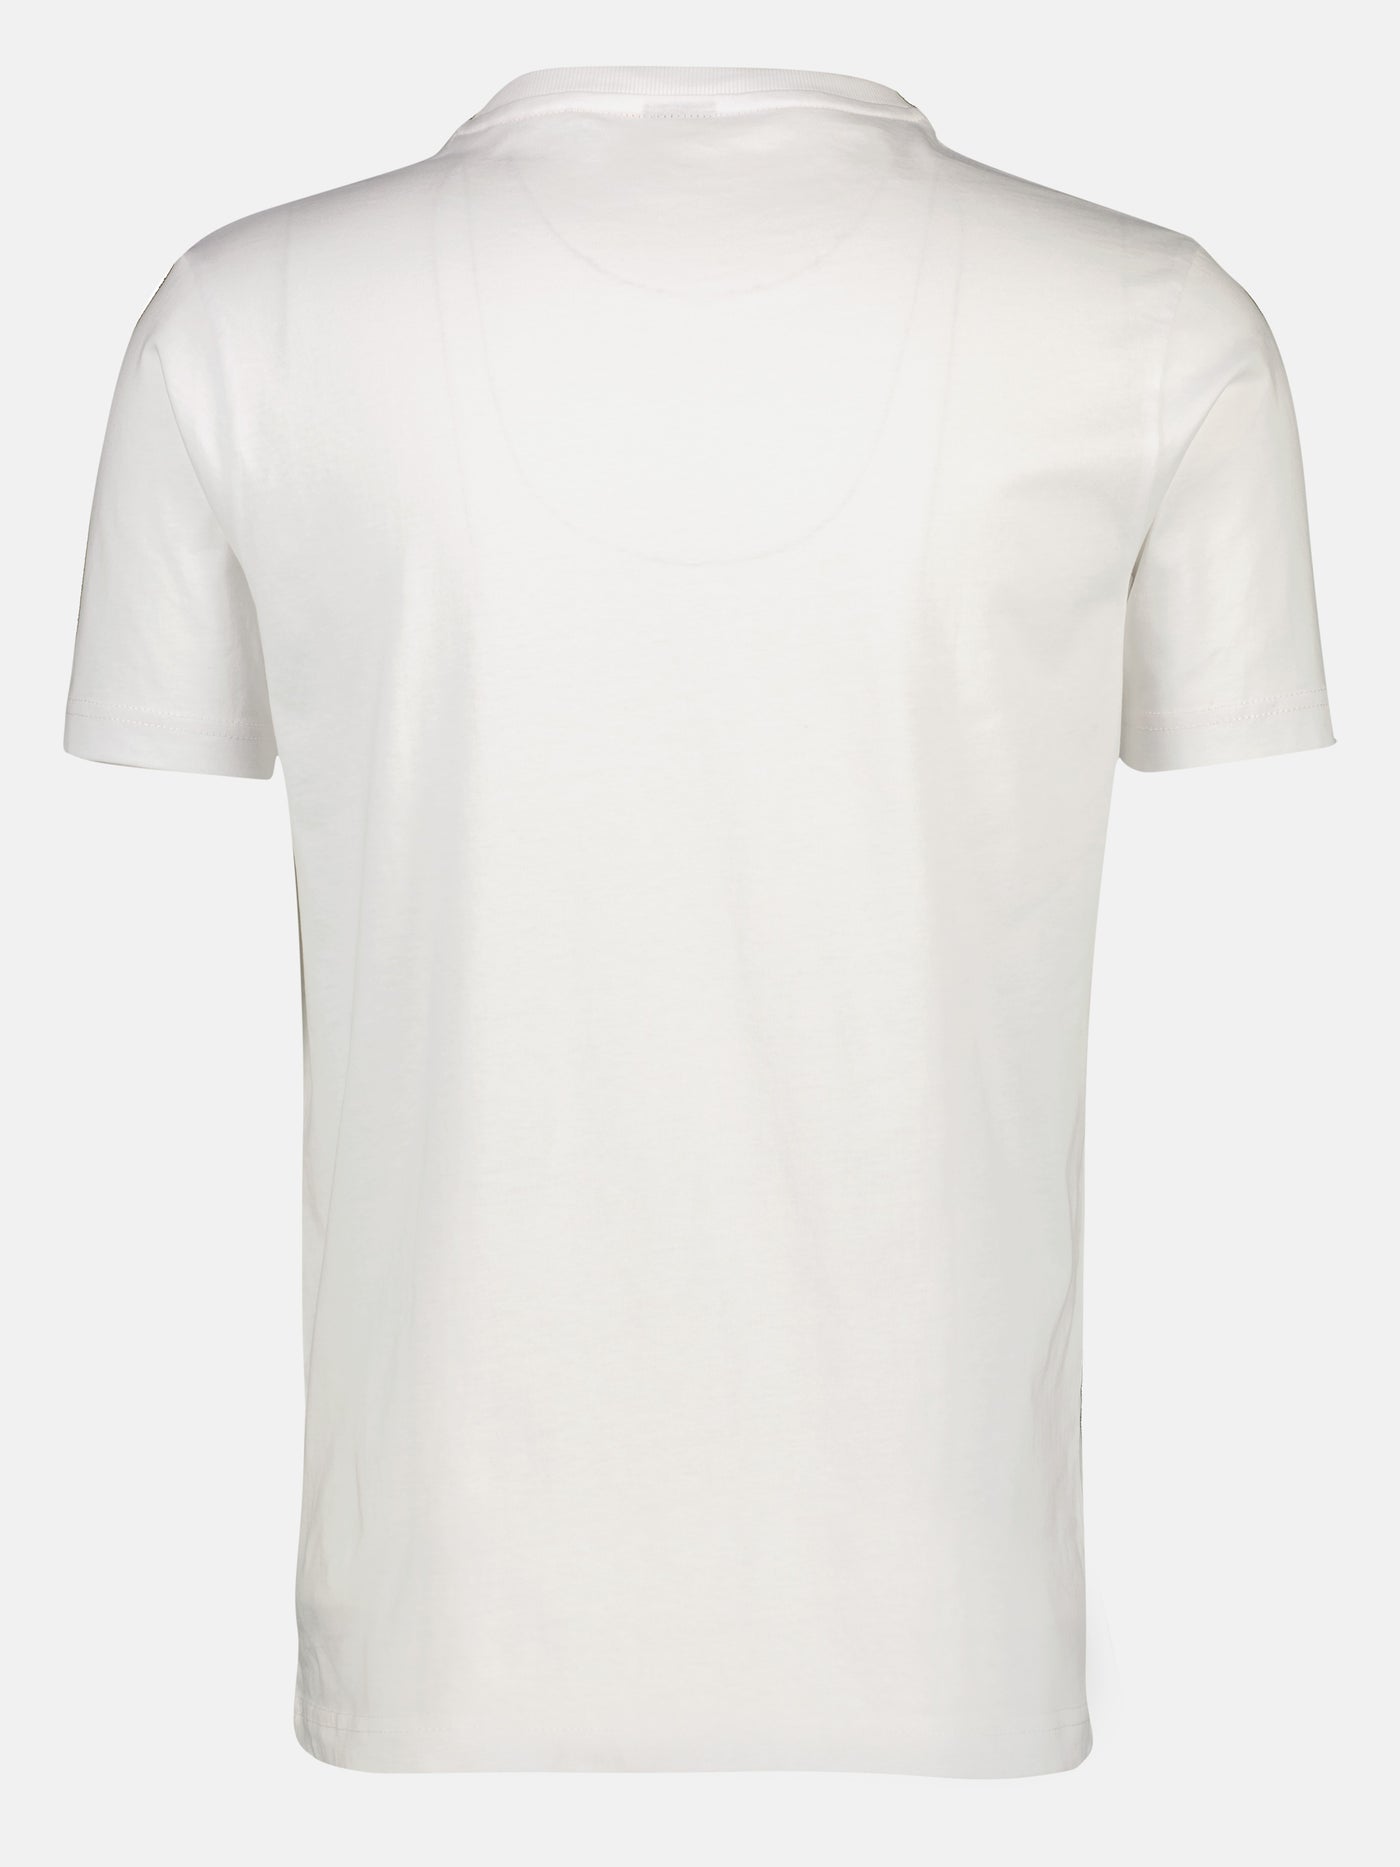 Rundhals T-Shirt mit dezemtem Brustprint